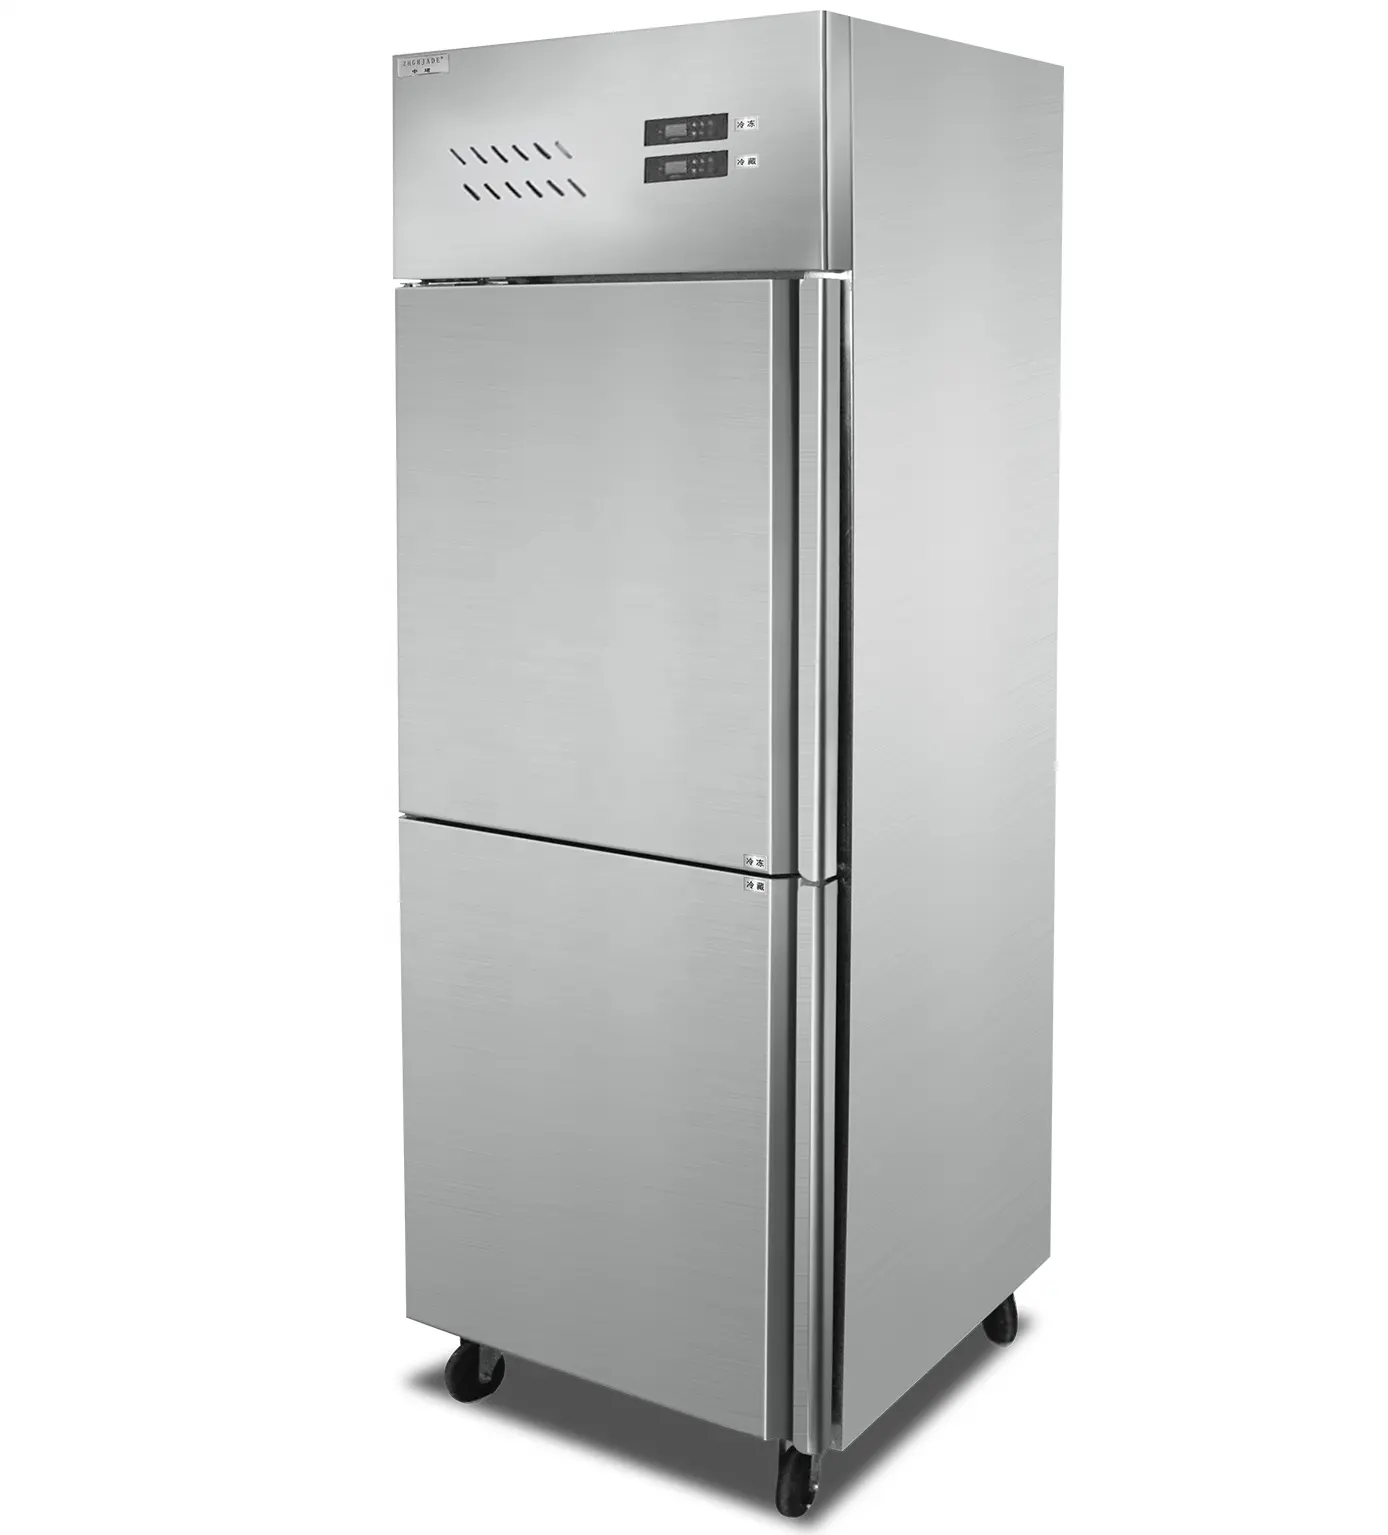 โมเดลระเบิด จุดสินค้าเชิงพาณิชย์ในครัวเรือนตู้แช่แข็ง 2 ประตูขนาดเล็กตู้เย็นประหยัดพลังงาน